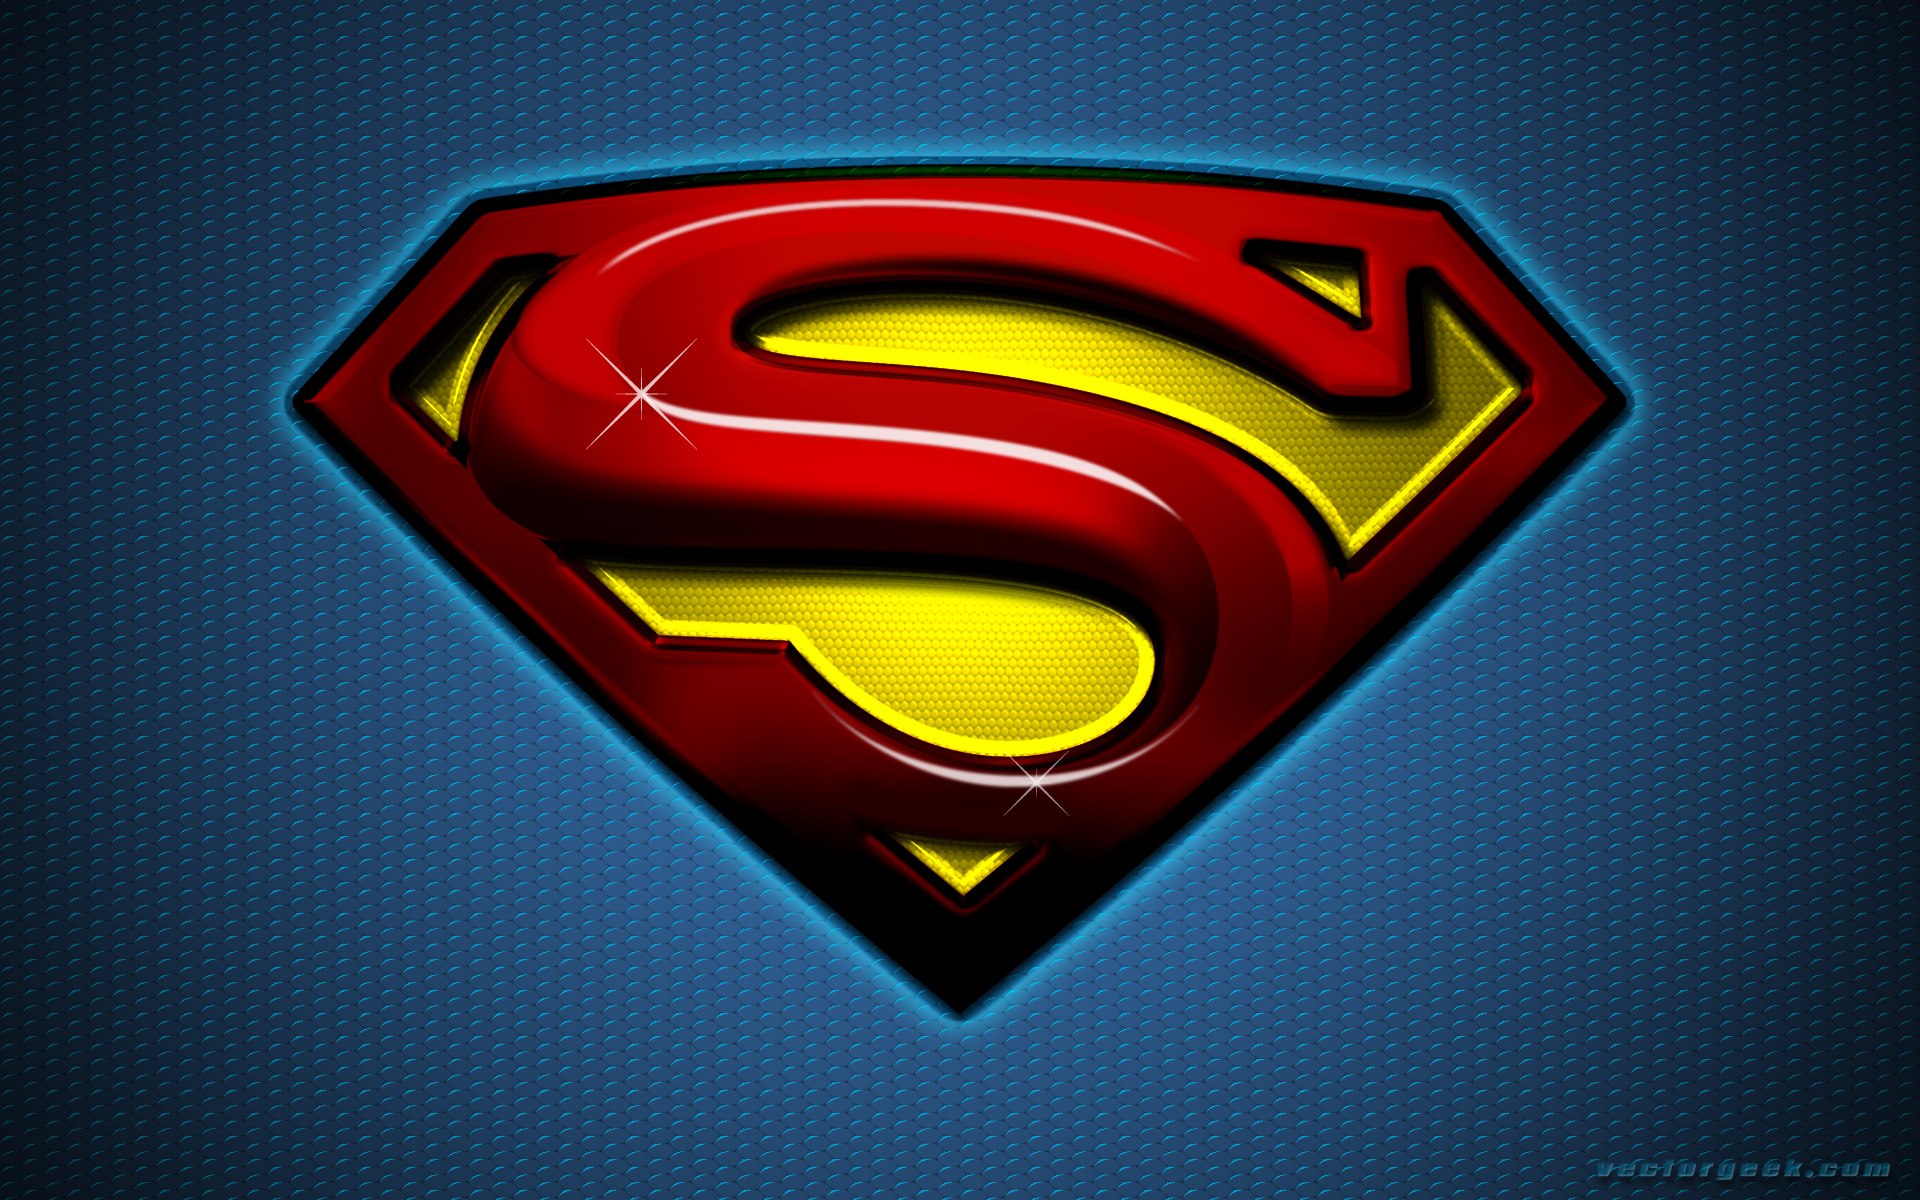 Superman Image Wallpaper Puter Best Website